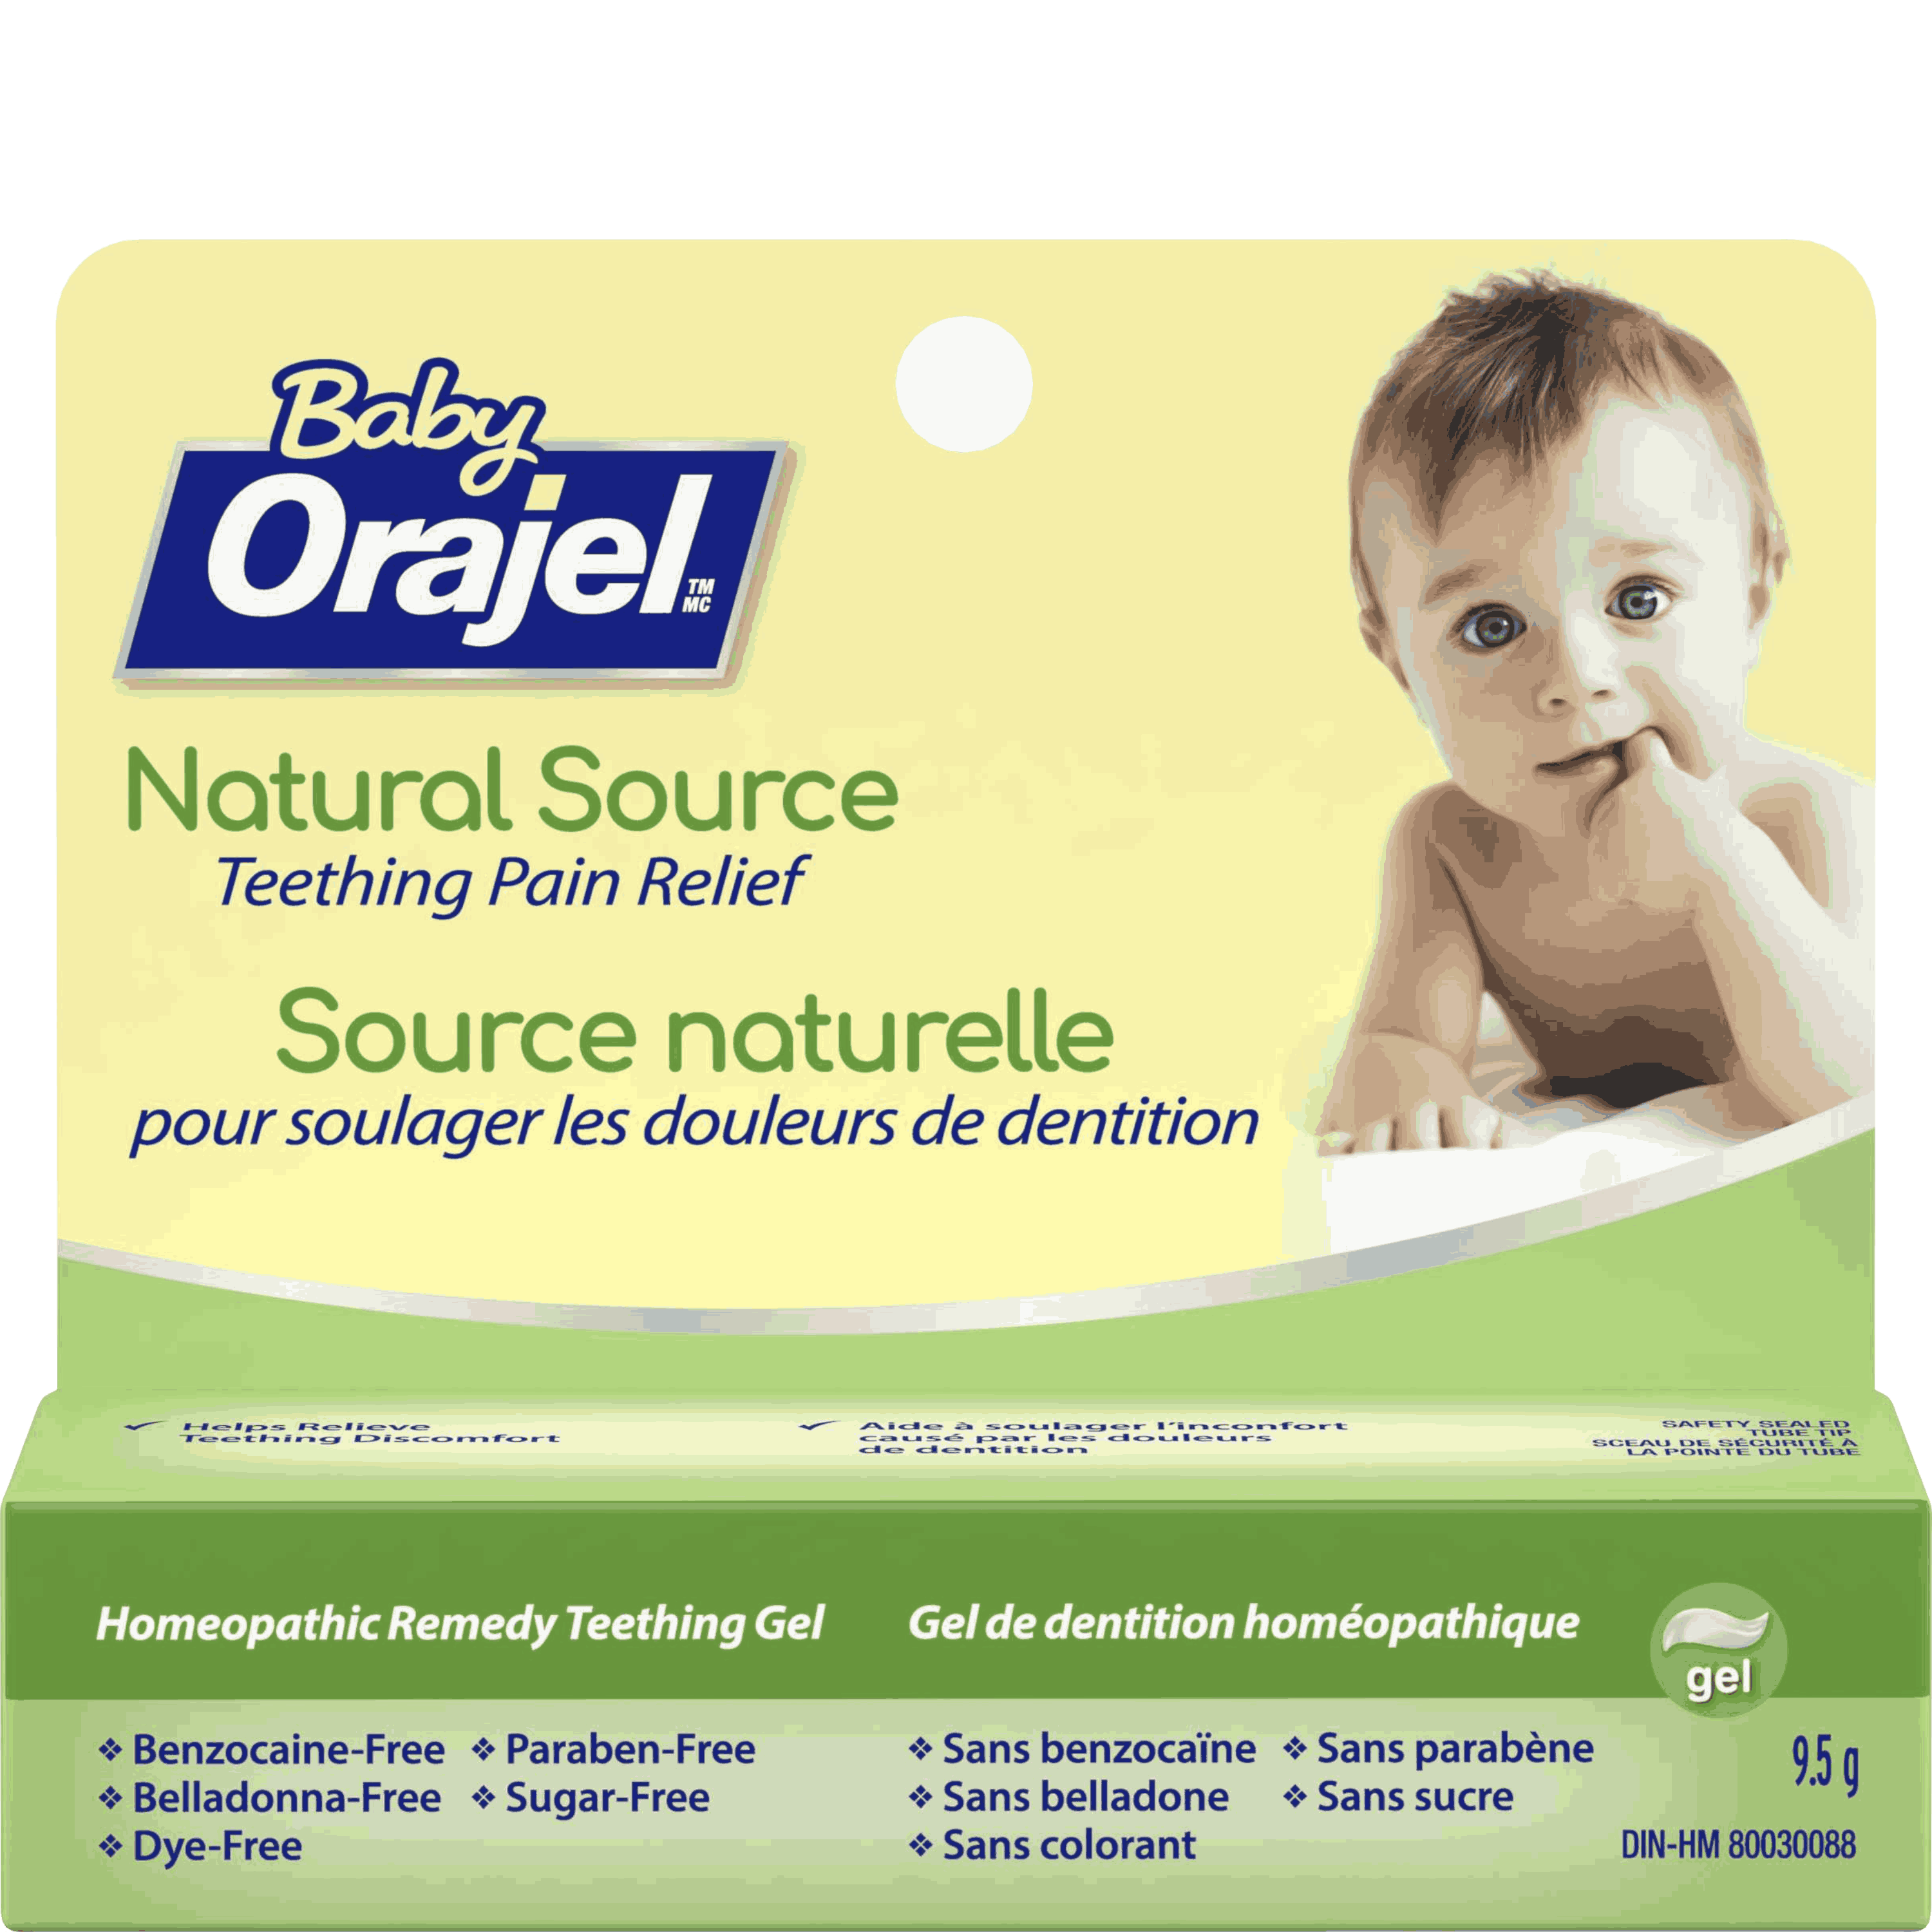 organic baby teething gel